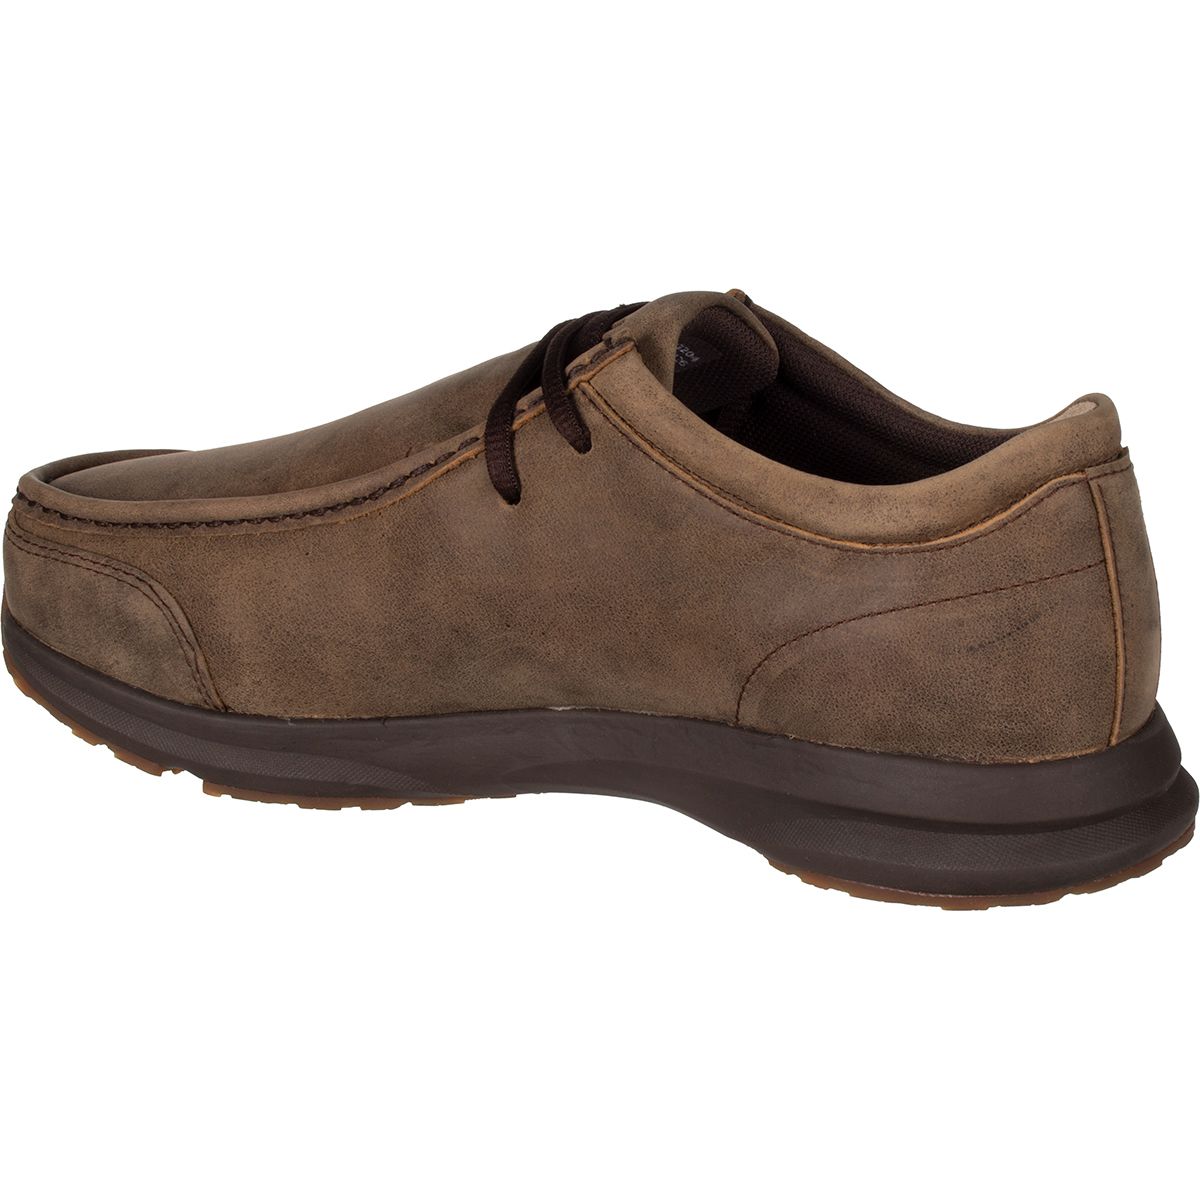 Ariat Spitfire Low Shoe - Men's - Footwear